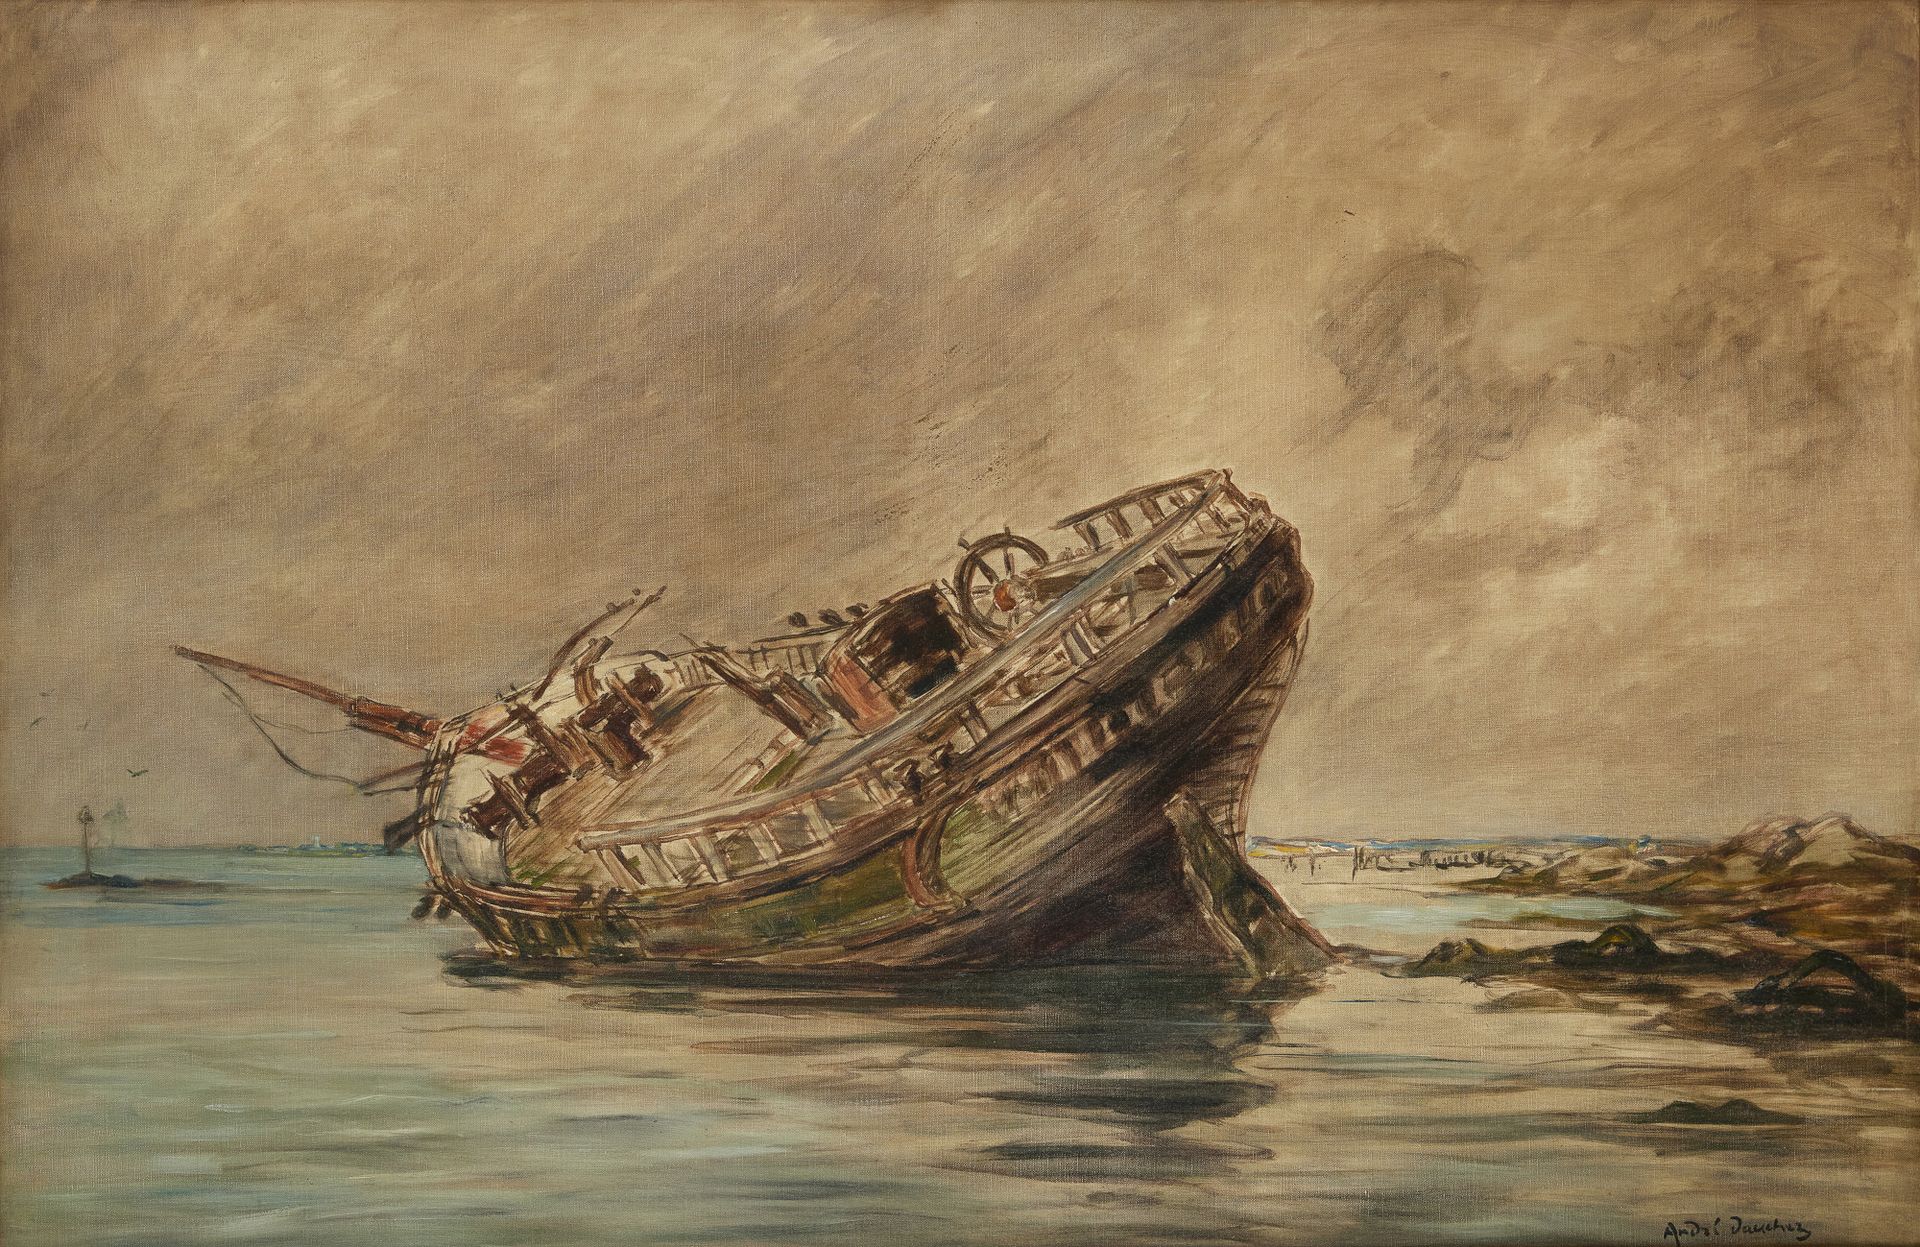 Null 安德烈-道谢(1870 - 1948)
退潮时的沉船
布面油画 
右下方有签名 
65 x 100厘米